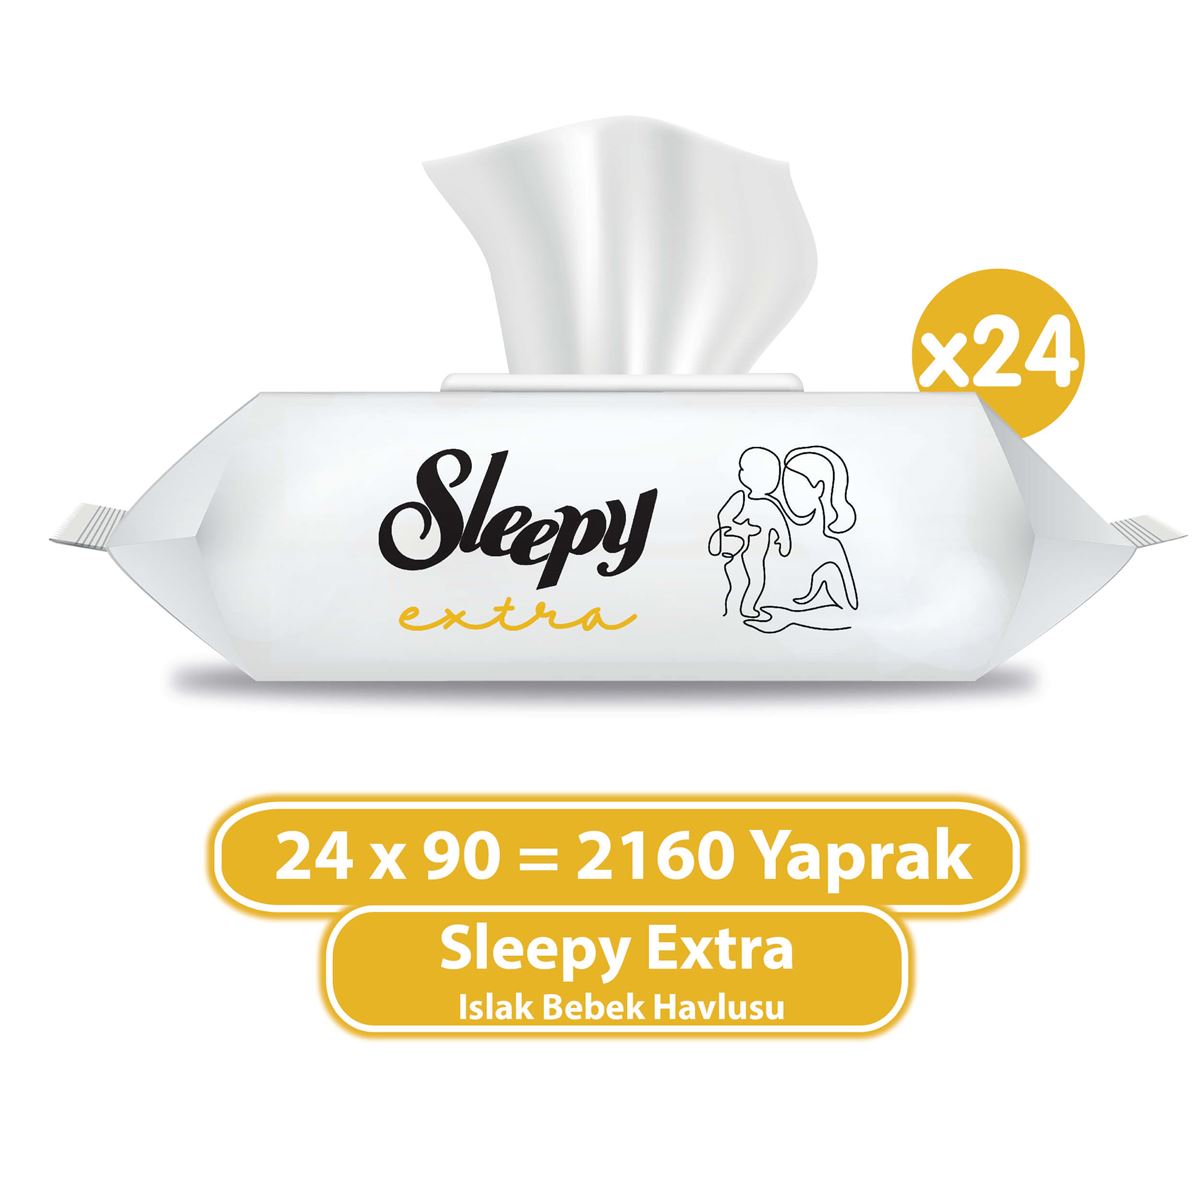 Sleepy Extra Islak Bebek Havlusu 24x90 (2160 Yaprak)